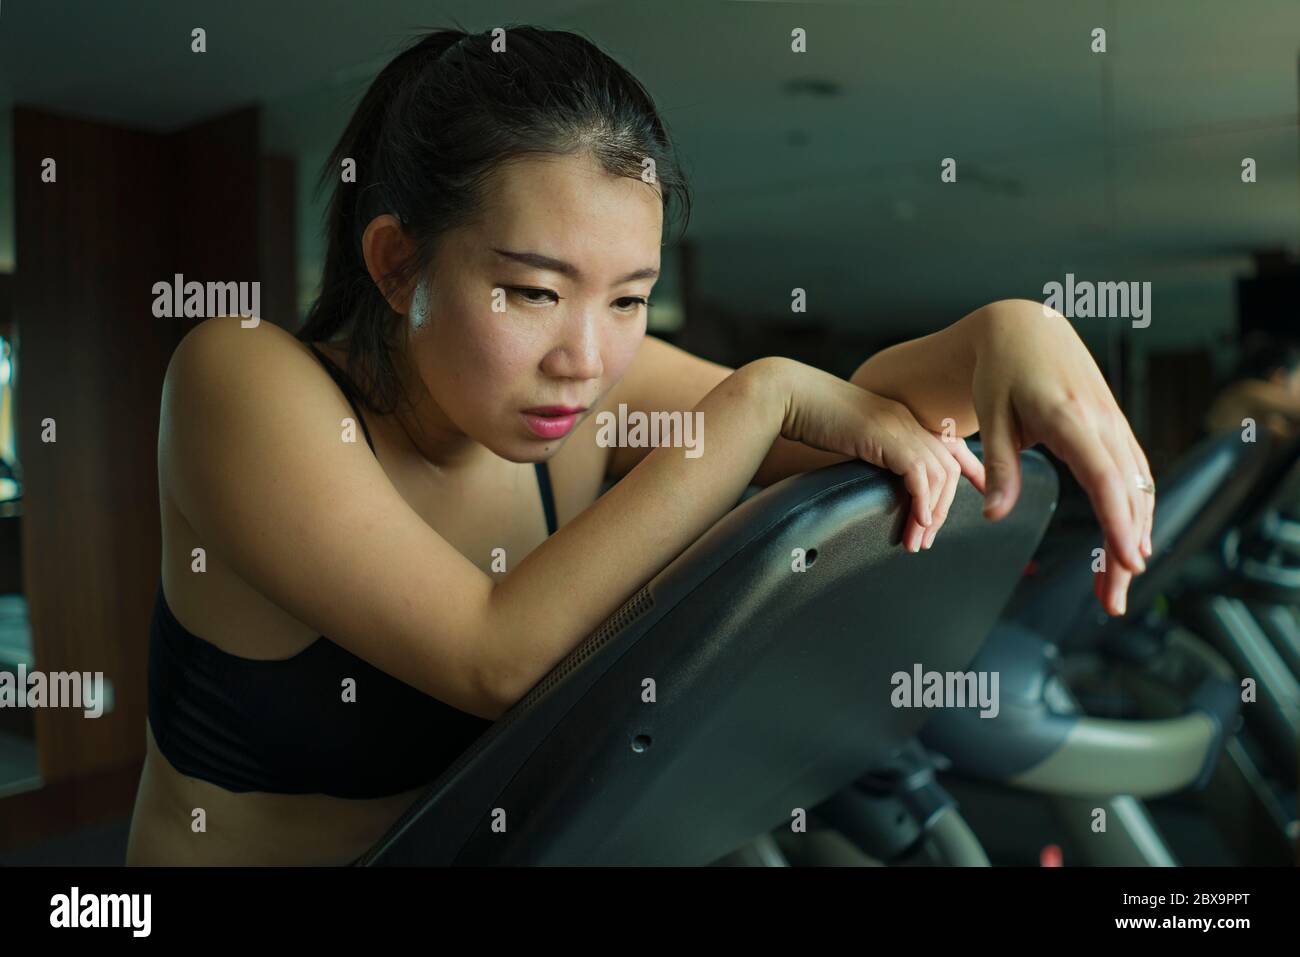 Giovane attraente e in forma Asian Korean donna esausta durante l'allenamento in corsa presso la palestra dell'hotel o club fitness che fa jogging nella tapis roulant allenandosi duramente con gli pneumatici Foto Stock